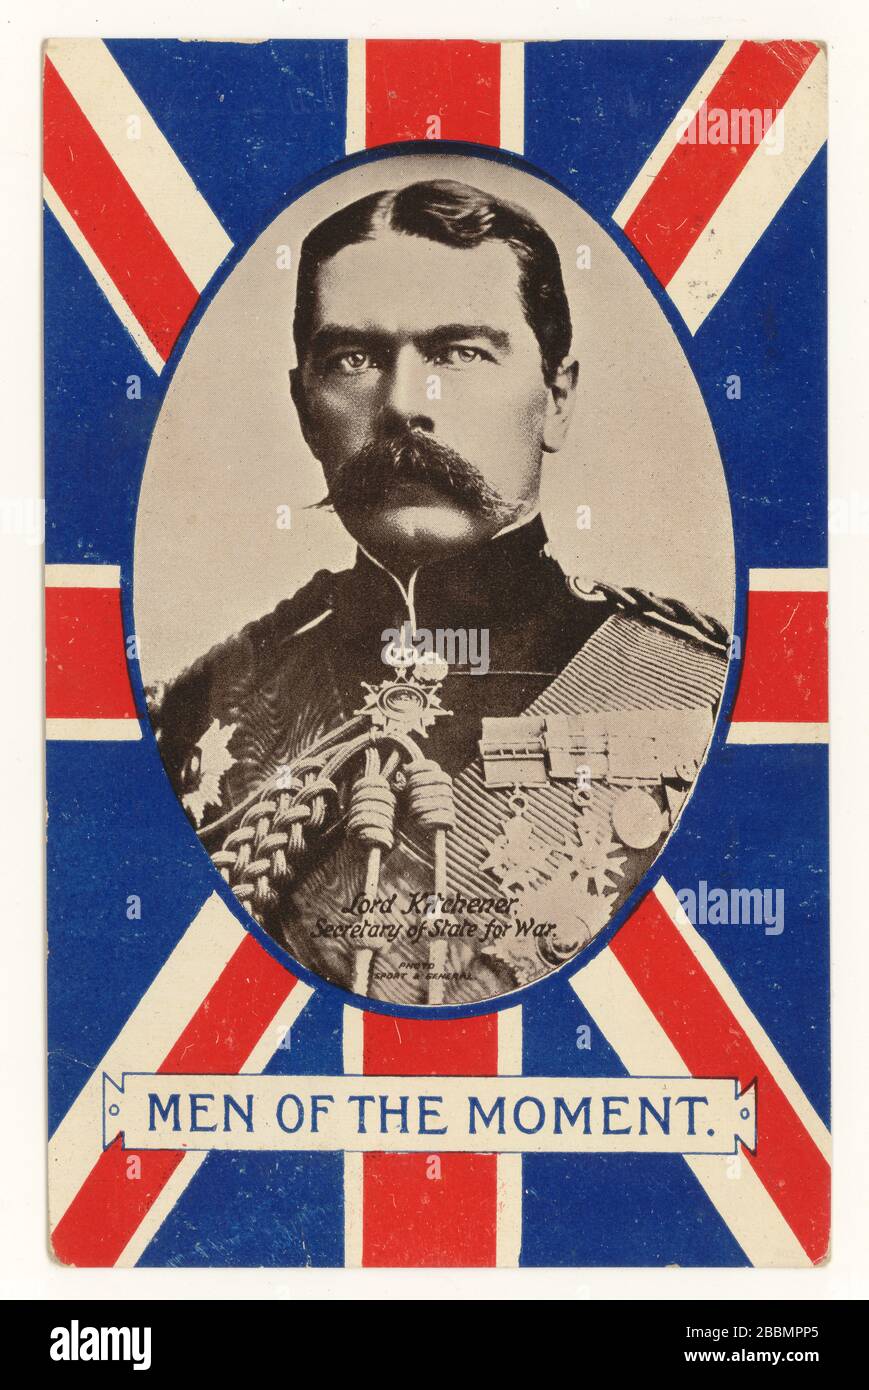 Anfang 1900 postete die patriotische Postkarte aus der Ära WW1, die Lord Kitchener, 1st Earl Kitchener, Secretary of State for war (ein Kabinettsminister) darstellt - eine von einer Serie mit dem Titel "Men of the Moment", gepostet im Jahr 1915 Stockfoto